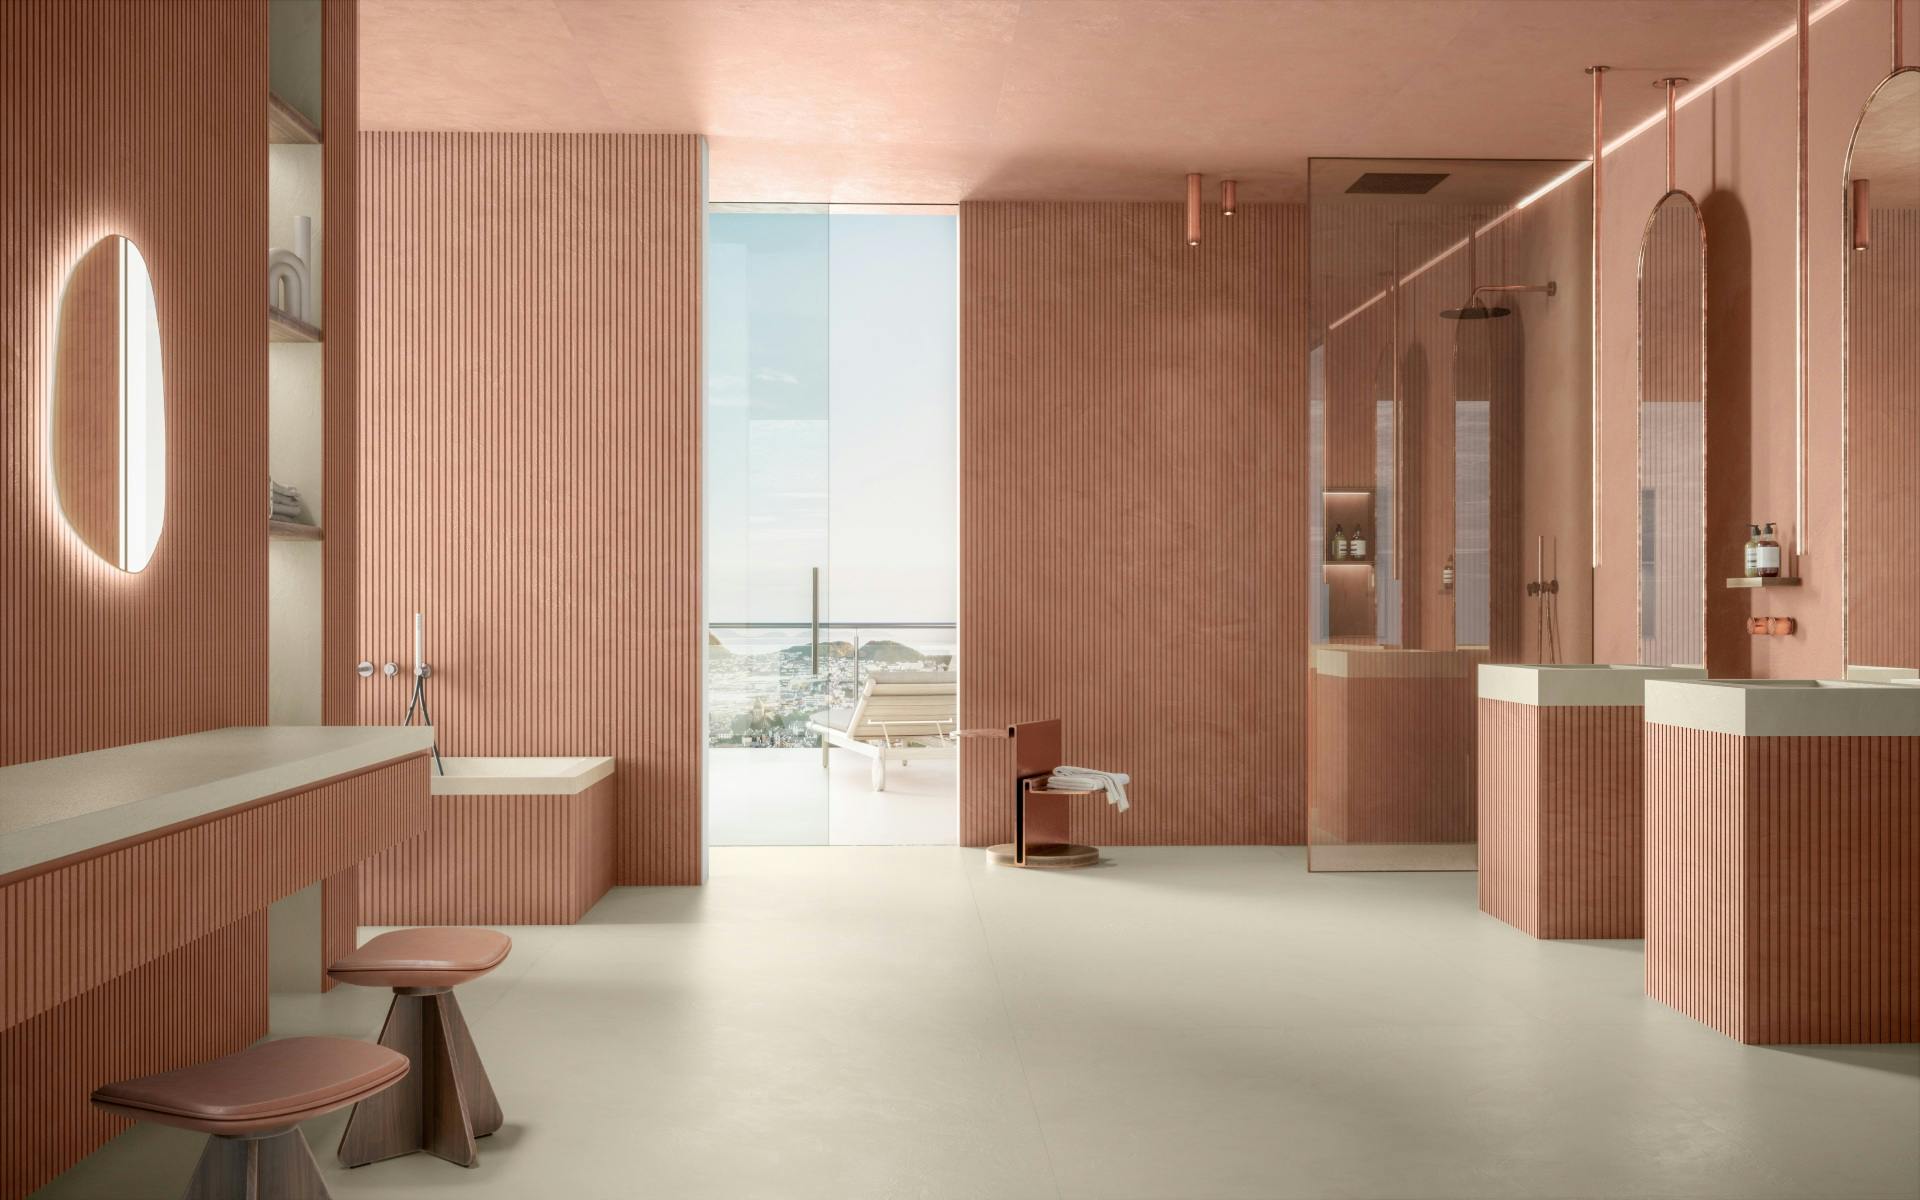 Numero immagine 32 della sezione corrente di {{The perfect bathroom according to Claudia Afshar}} di Cosentino Italia